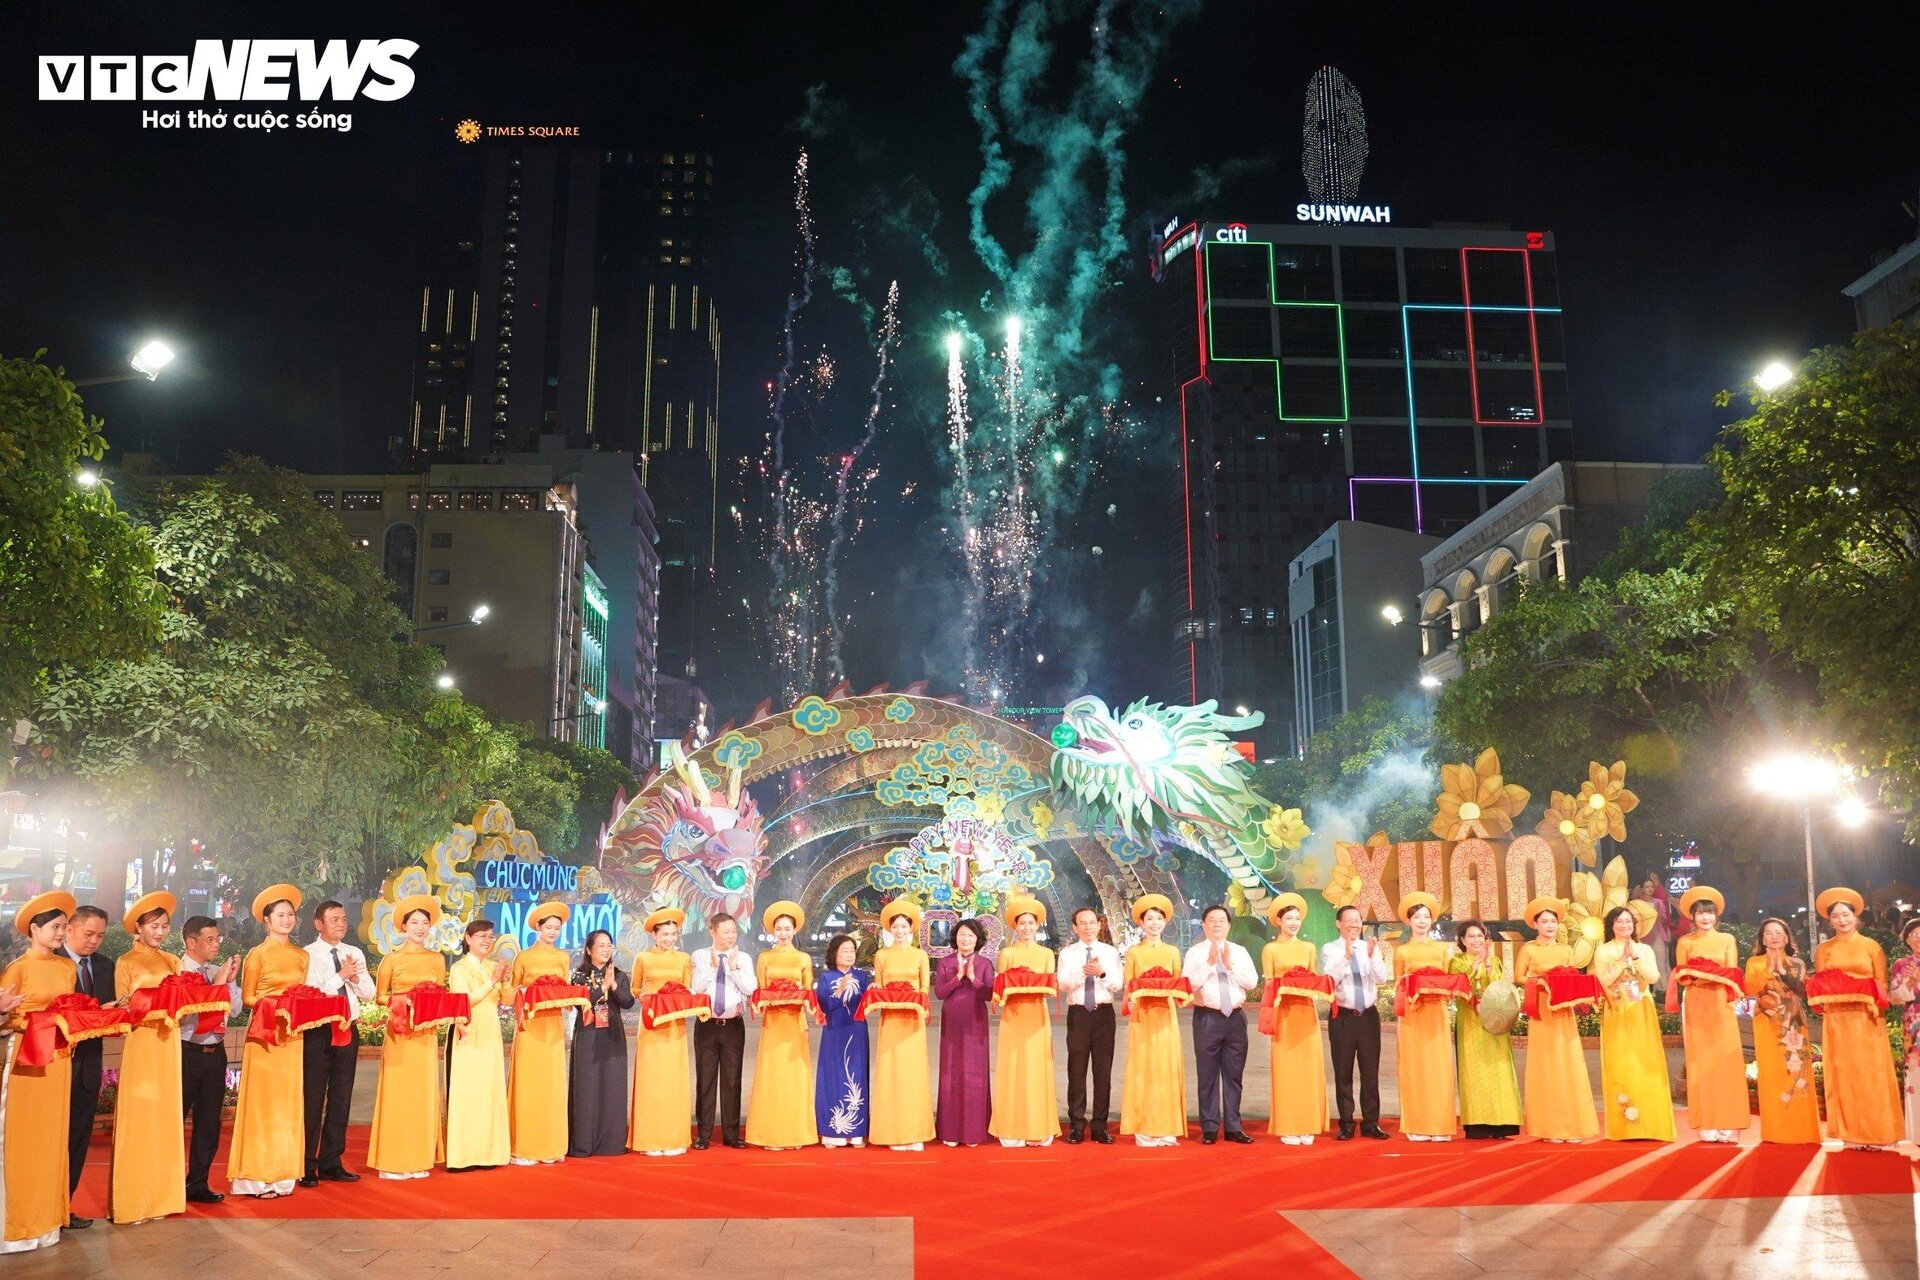  'Đôi rồng chầu sen' rực rỡ lên đèn trong đêm khai mạc đường hoa Nguyễn Huệ - 1